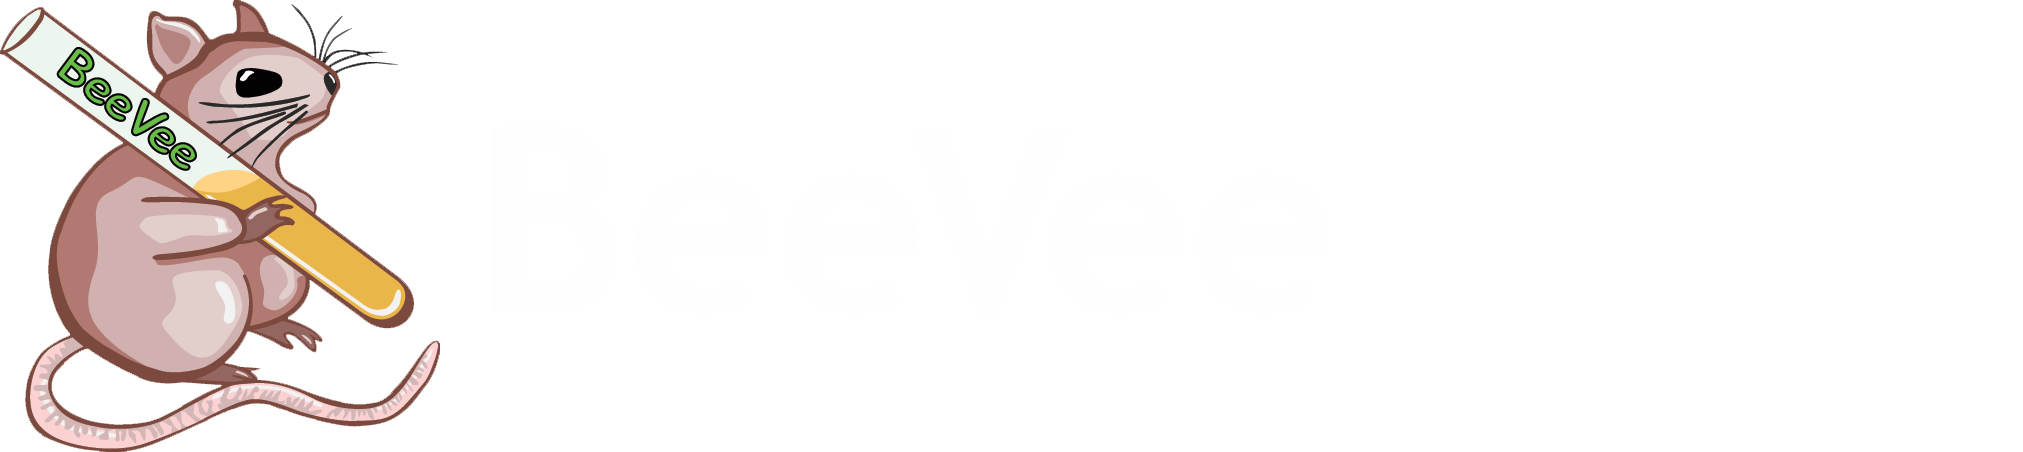 BeeVee, Biologen Vereniging Nijmegen logo